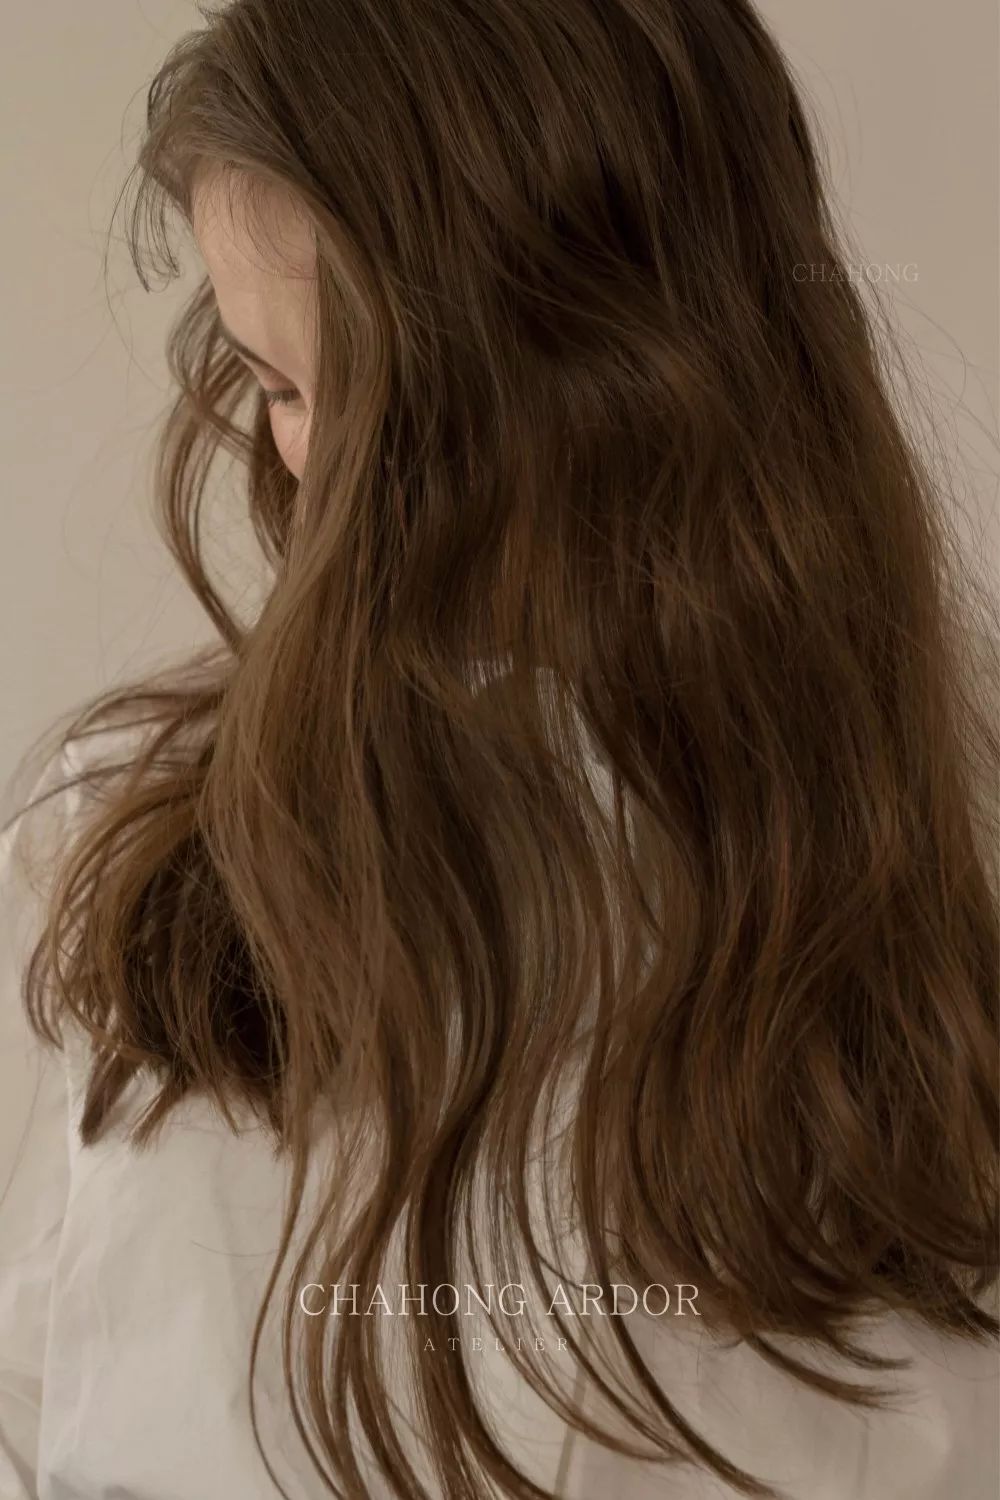 中长发的橄榄褐发色,齐眉刘海搭配慵懒卷▼▼檀棕直发的中长发,即便是